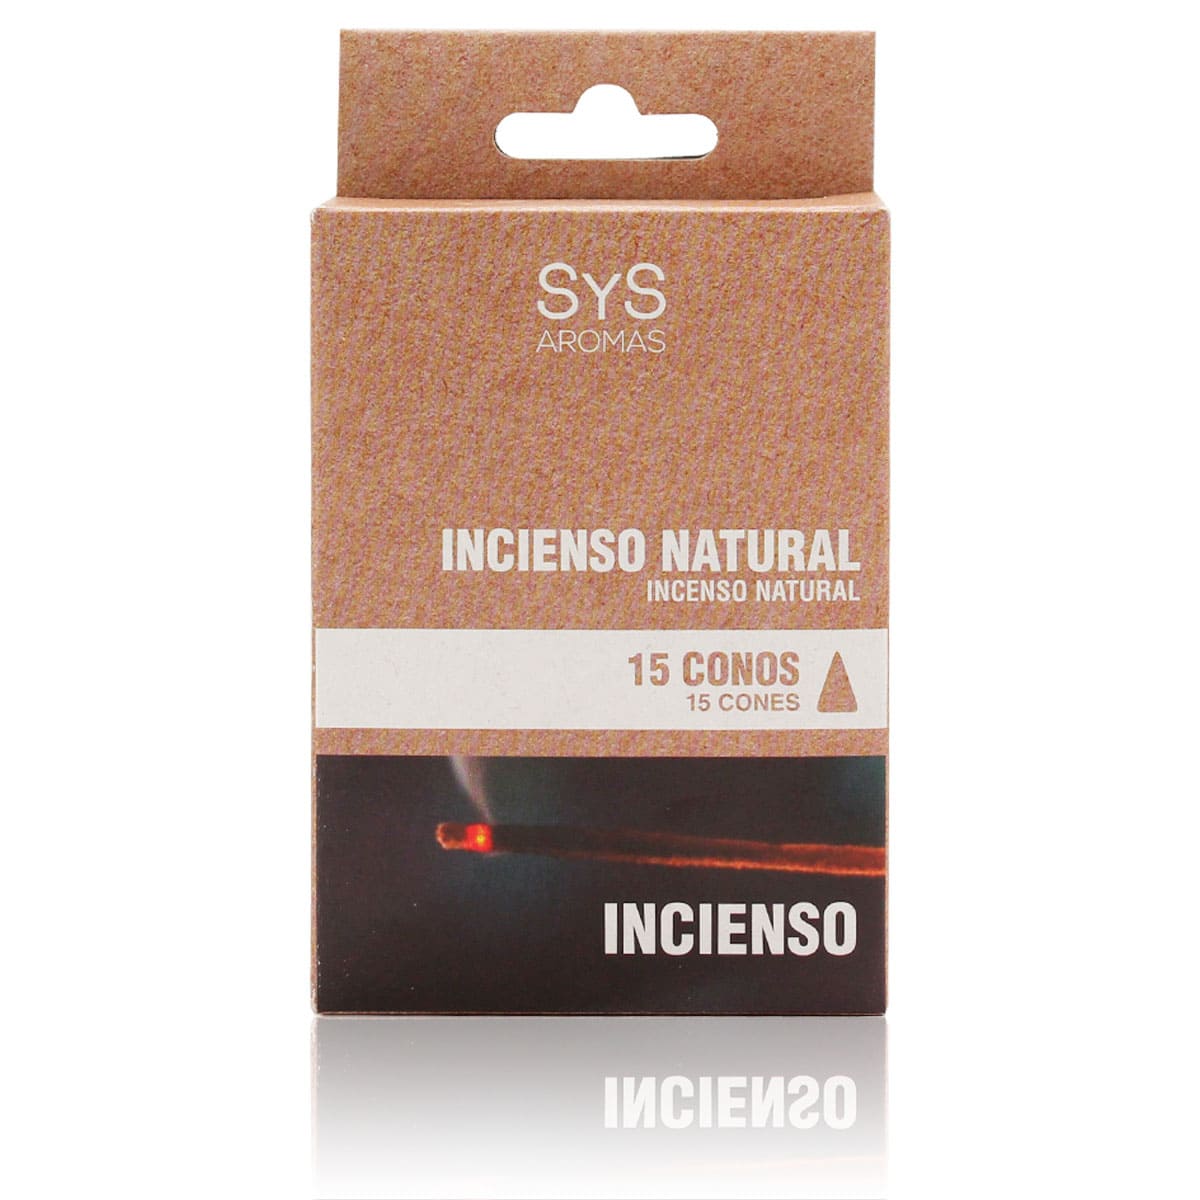 Buy Natural Inciense Inciense 15 Cones SYS Aromas